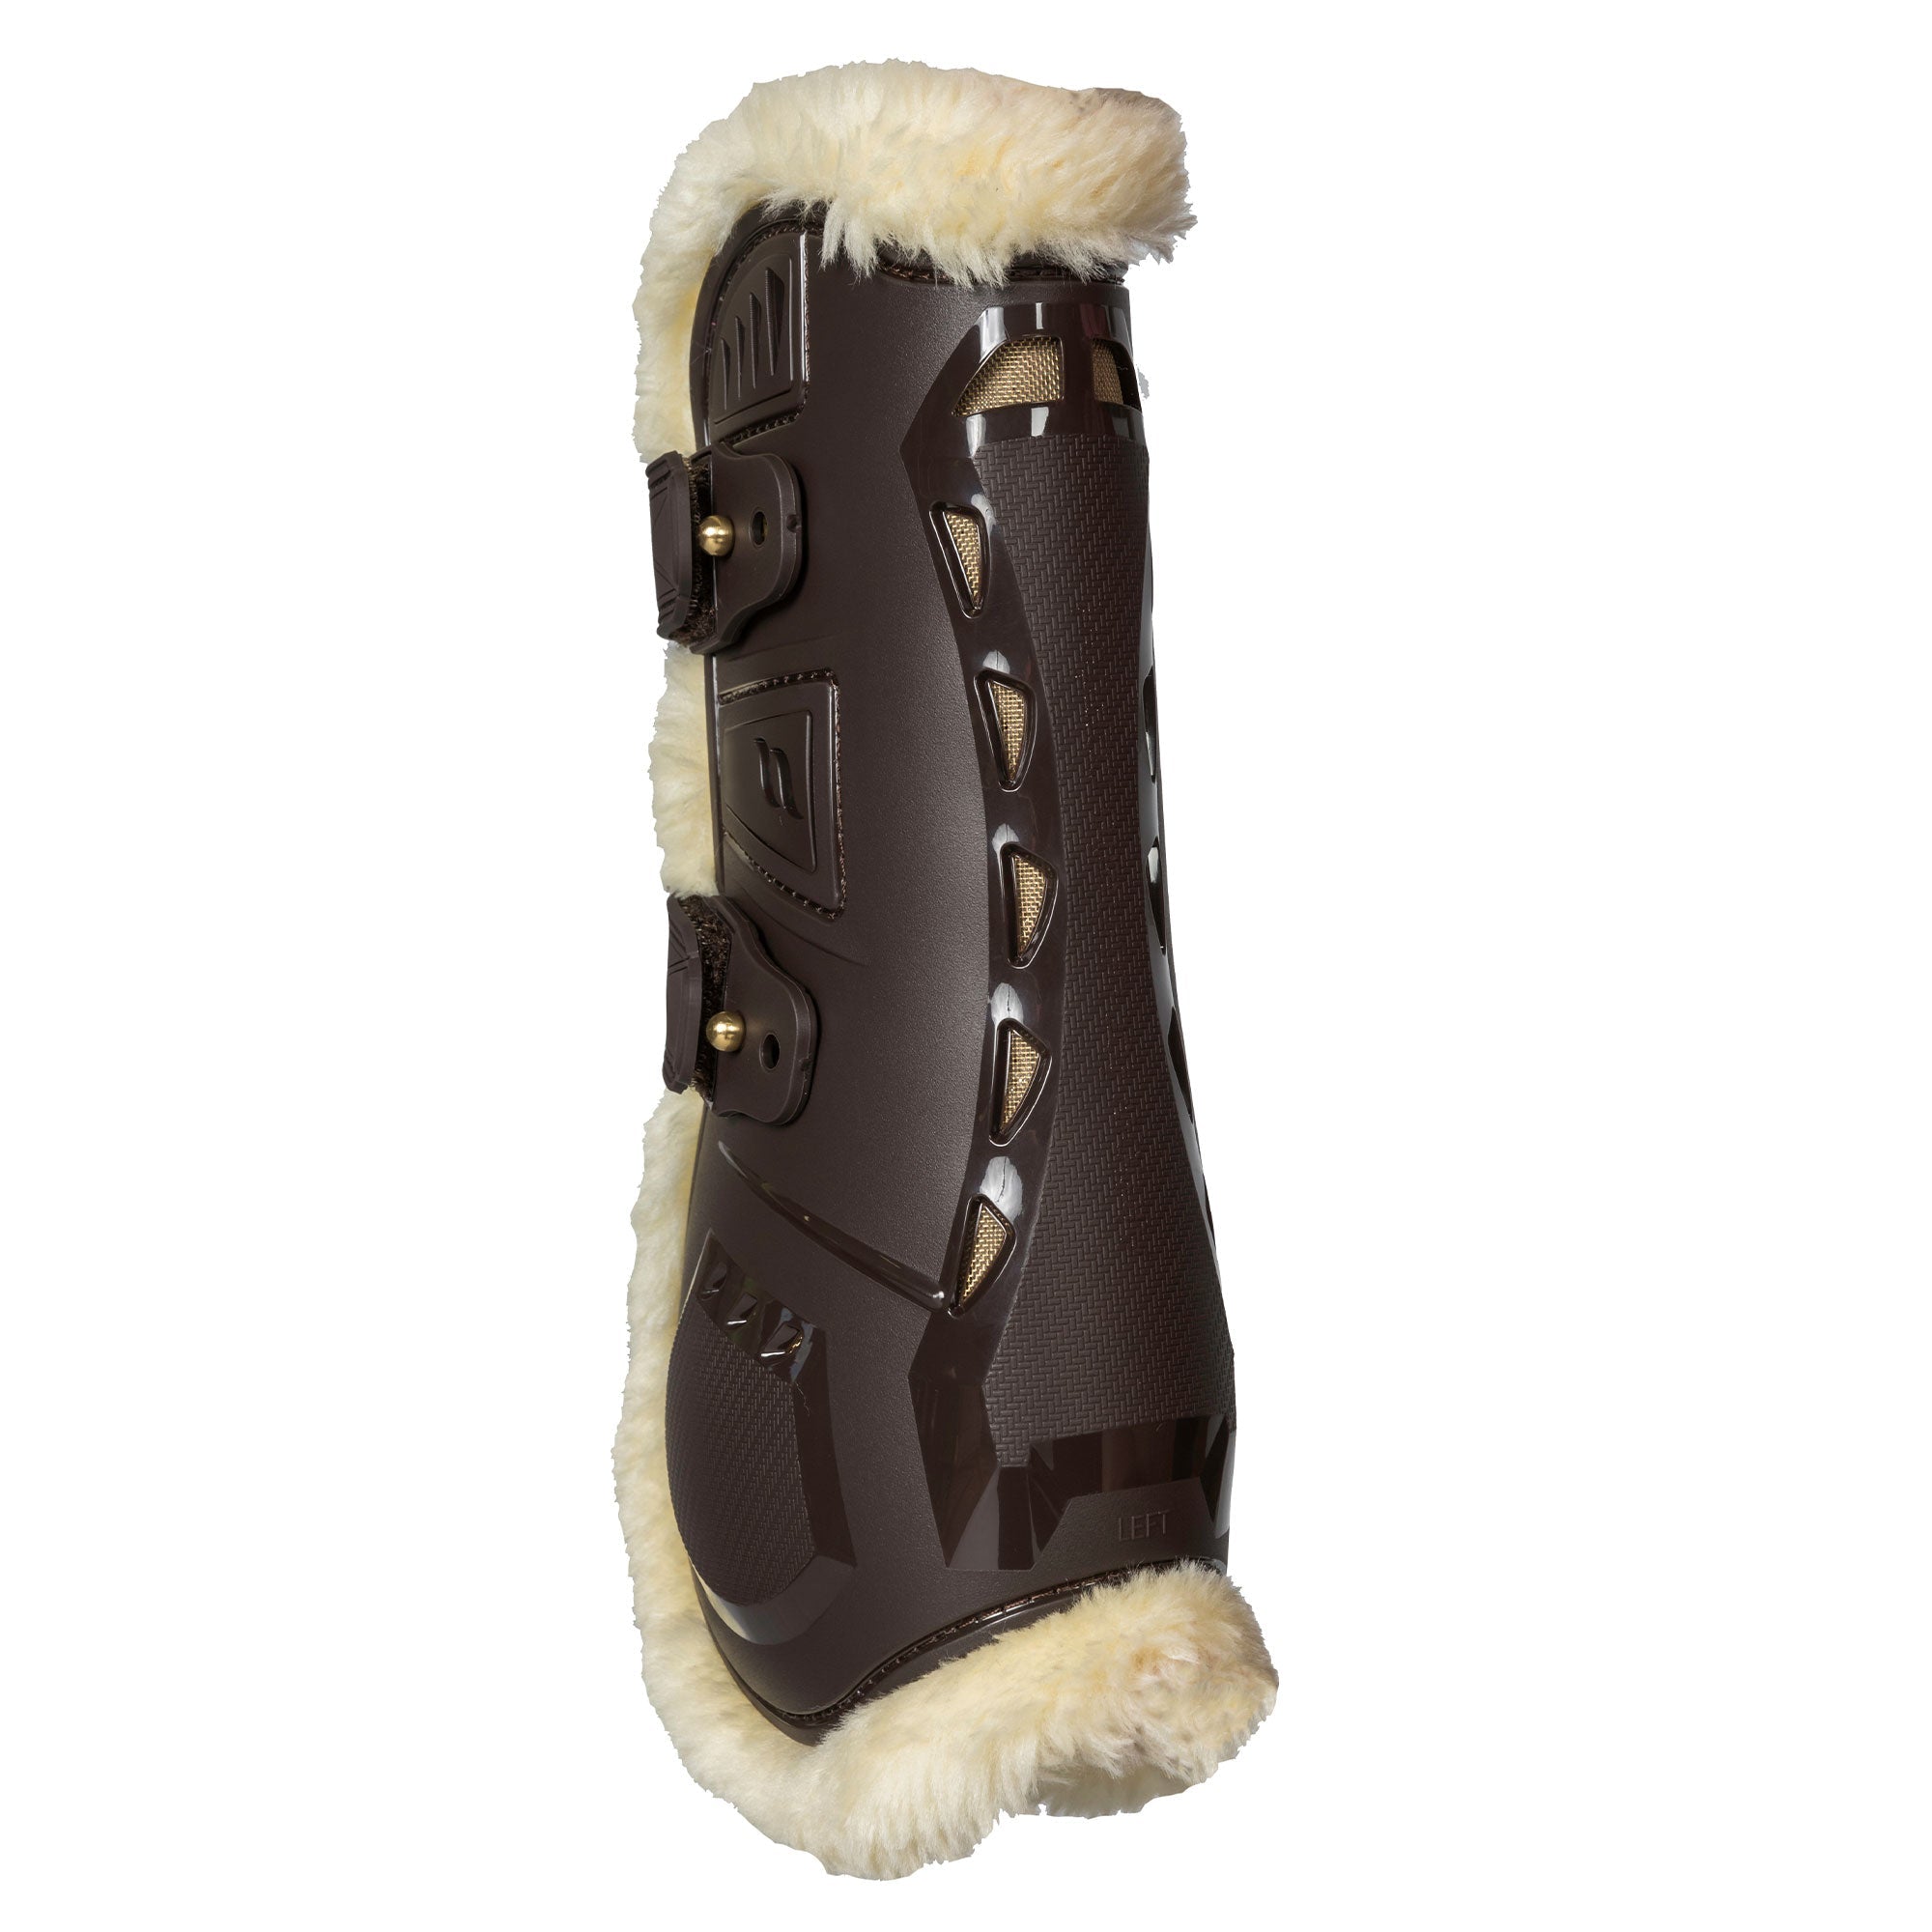 "AirFlow" Fur Tendon Boots